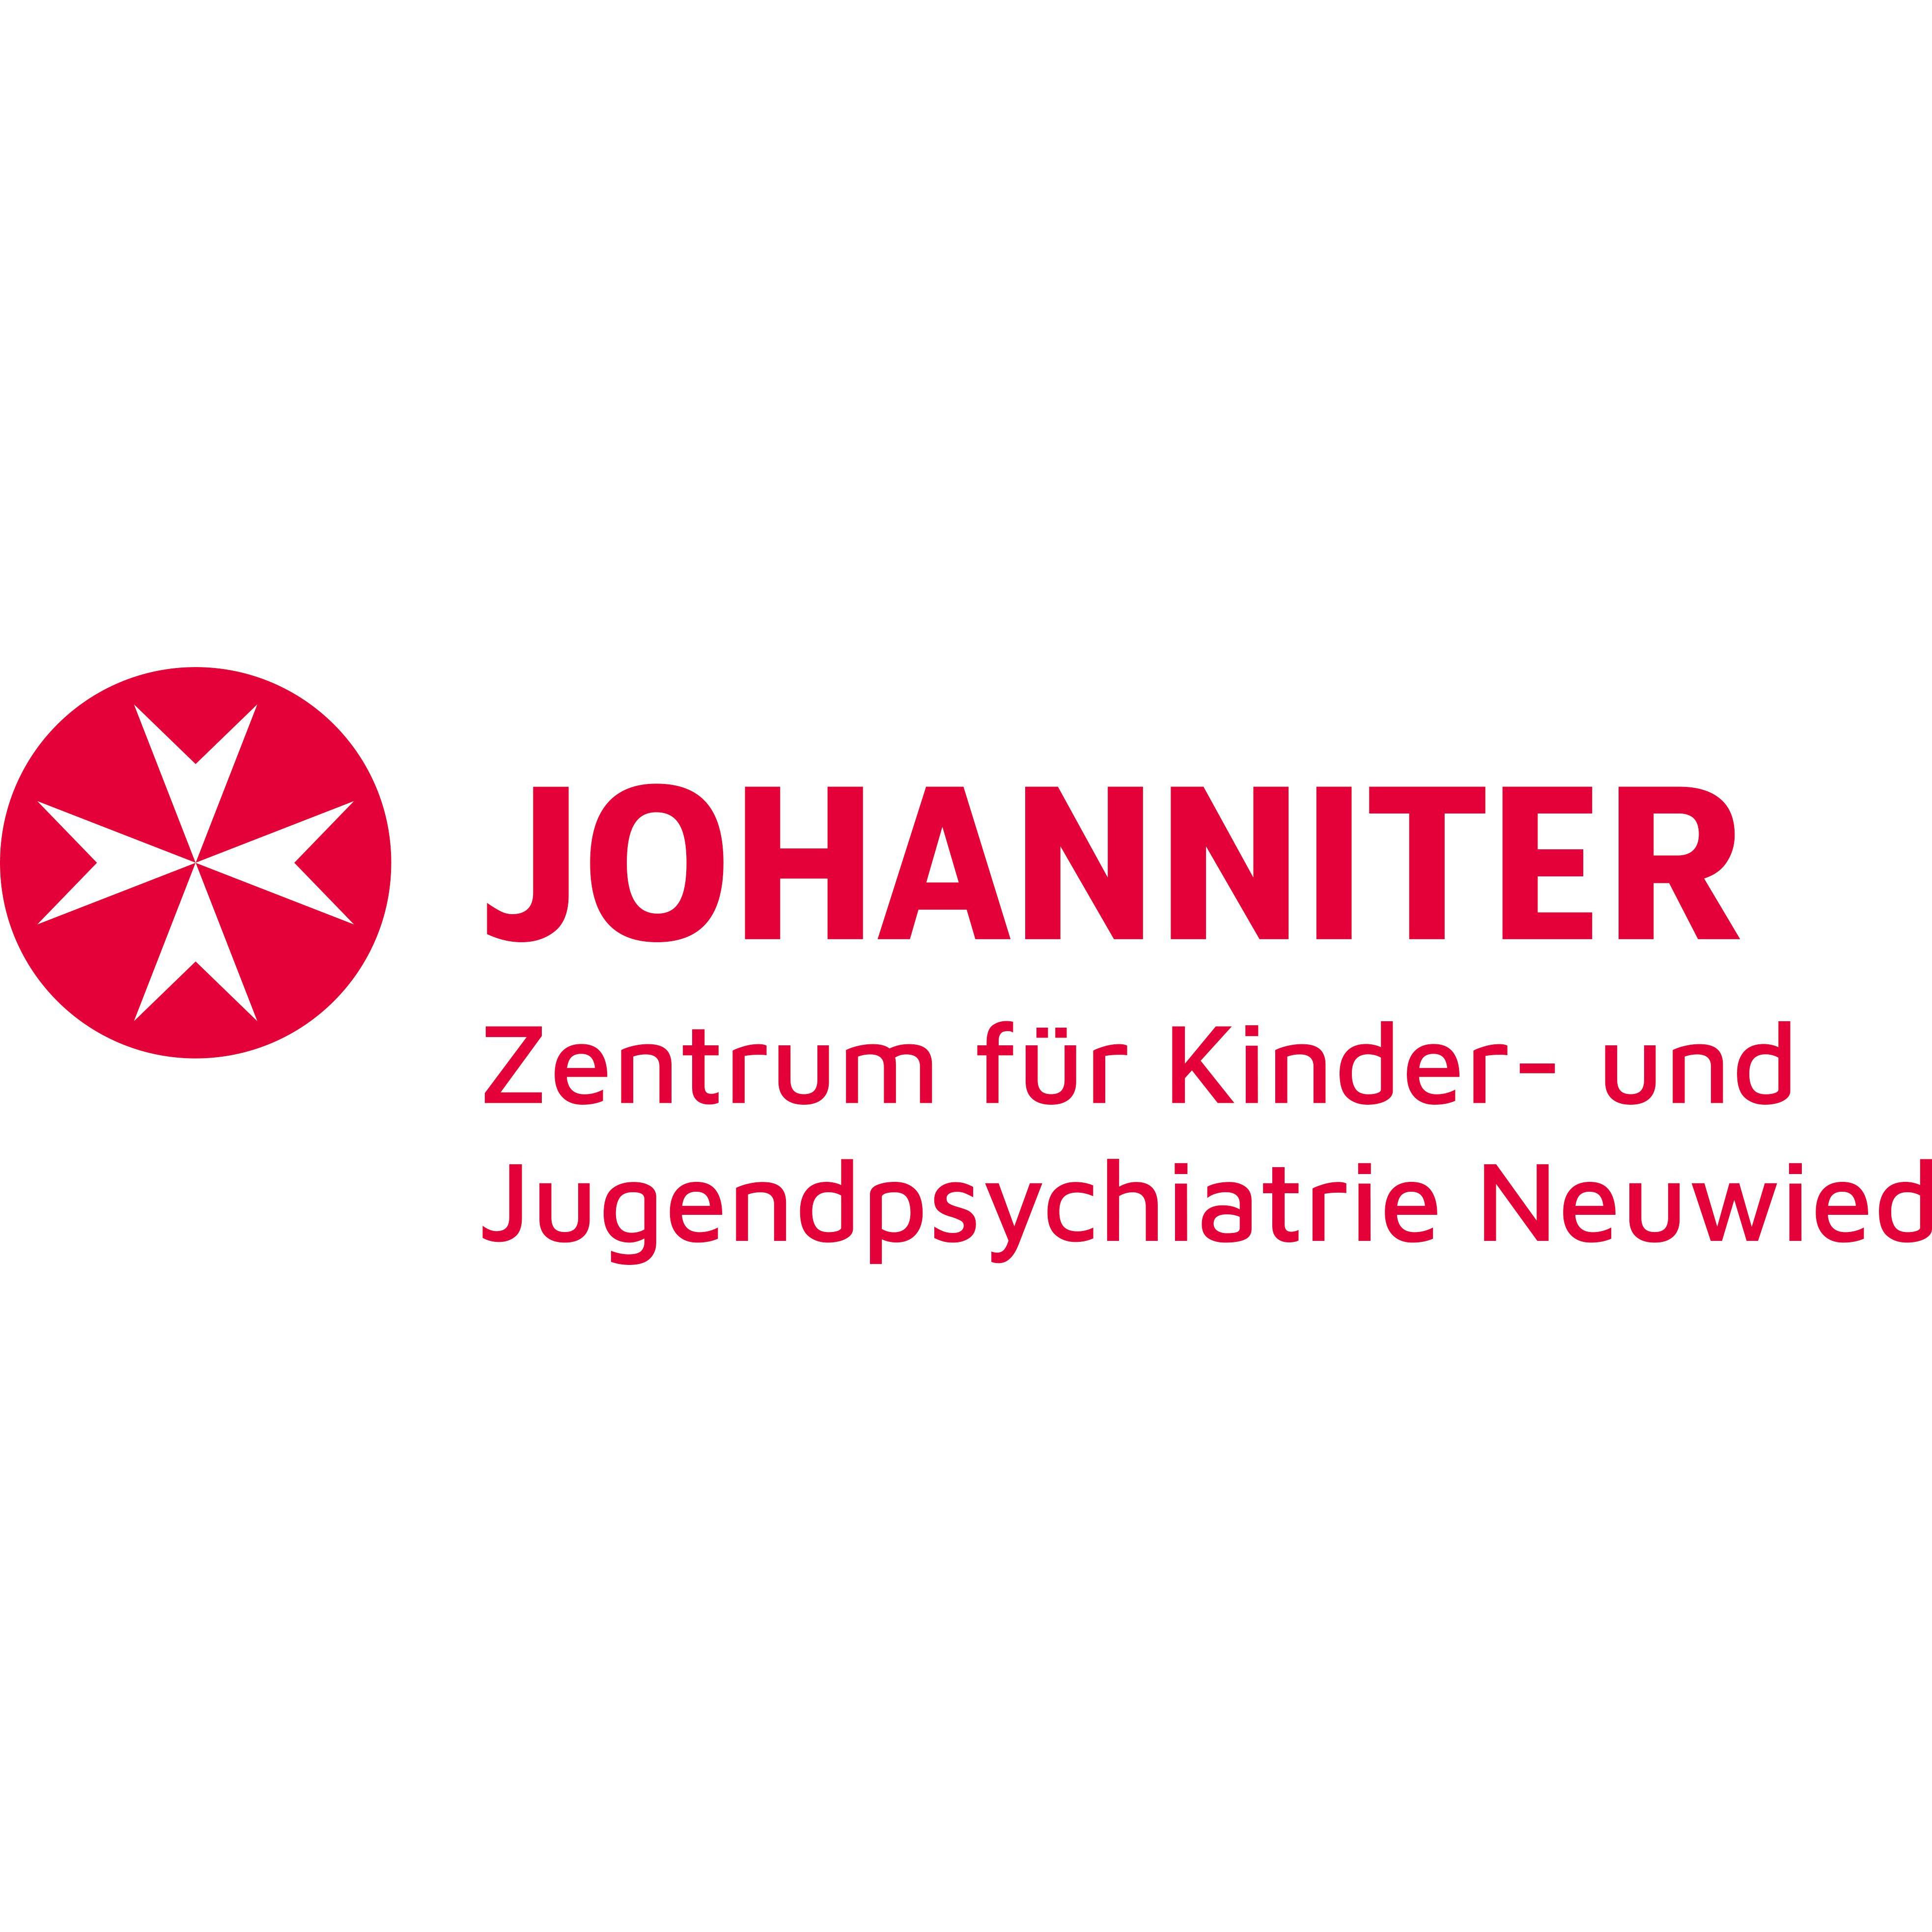 Johanniter-Zentrum für Kinder- und Jugendpsychiatrie Neuwied in Neuwied - Logo